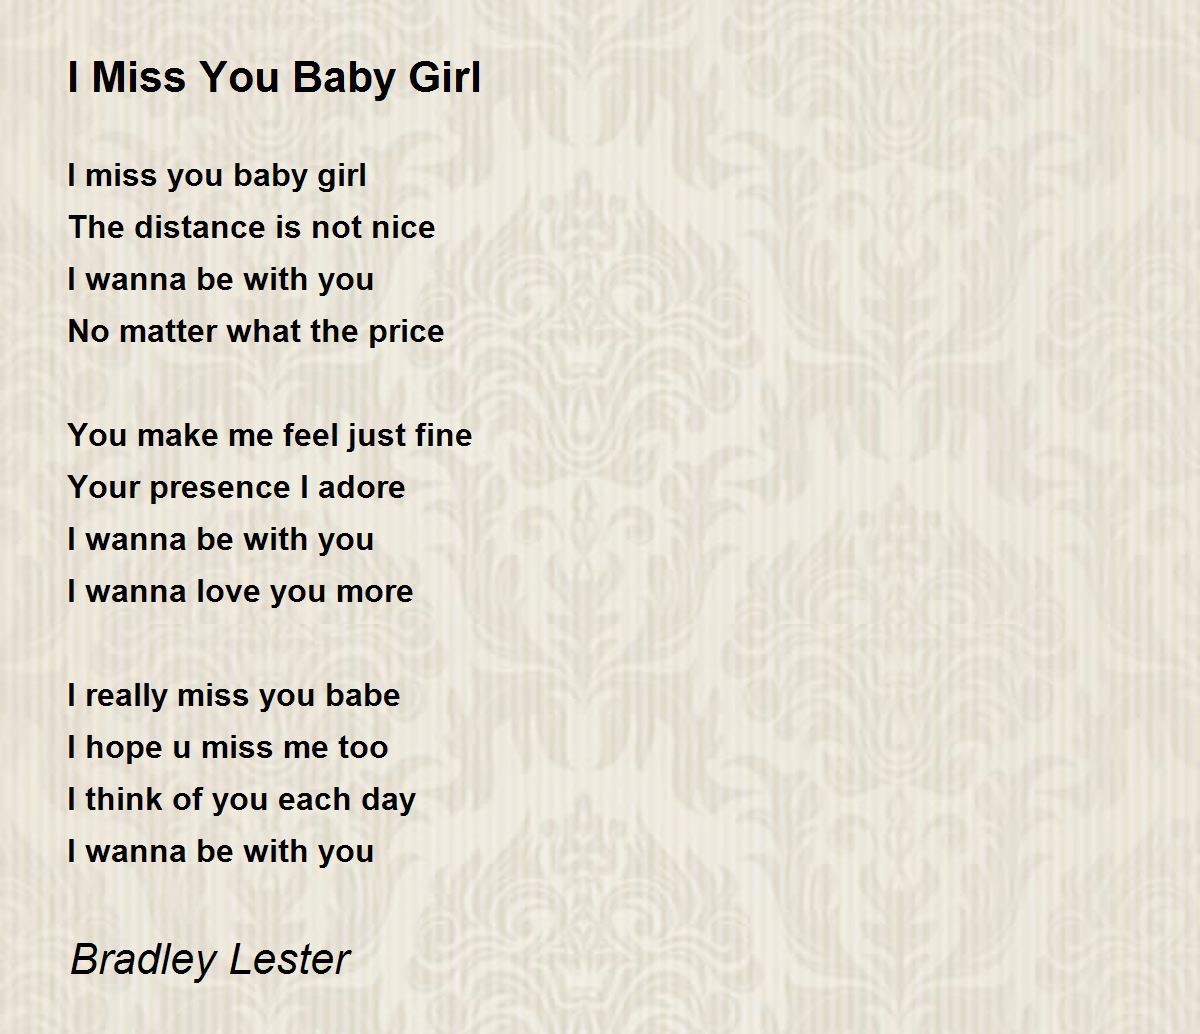 I Miss You Baby Girl - I Miss You Baby Girl Poem by Bradley Lester